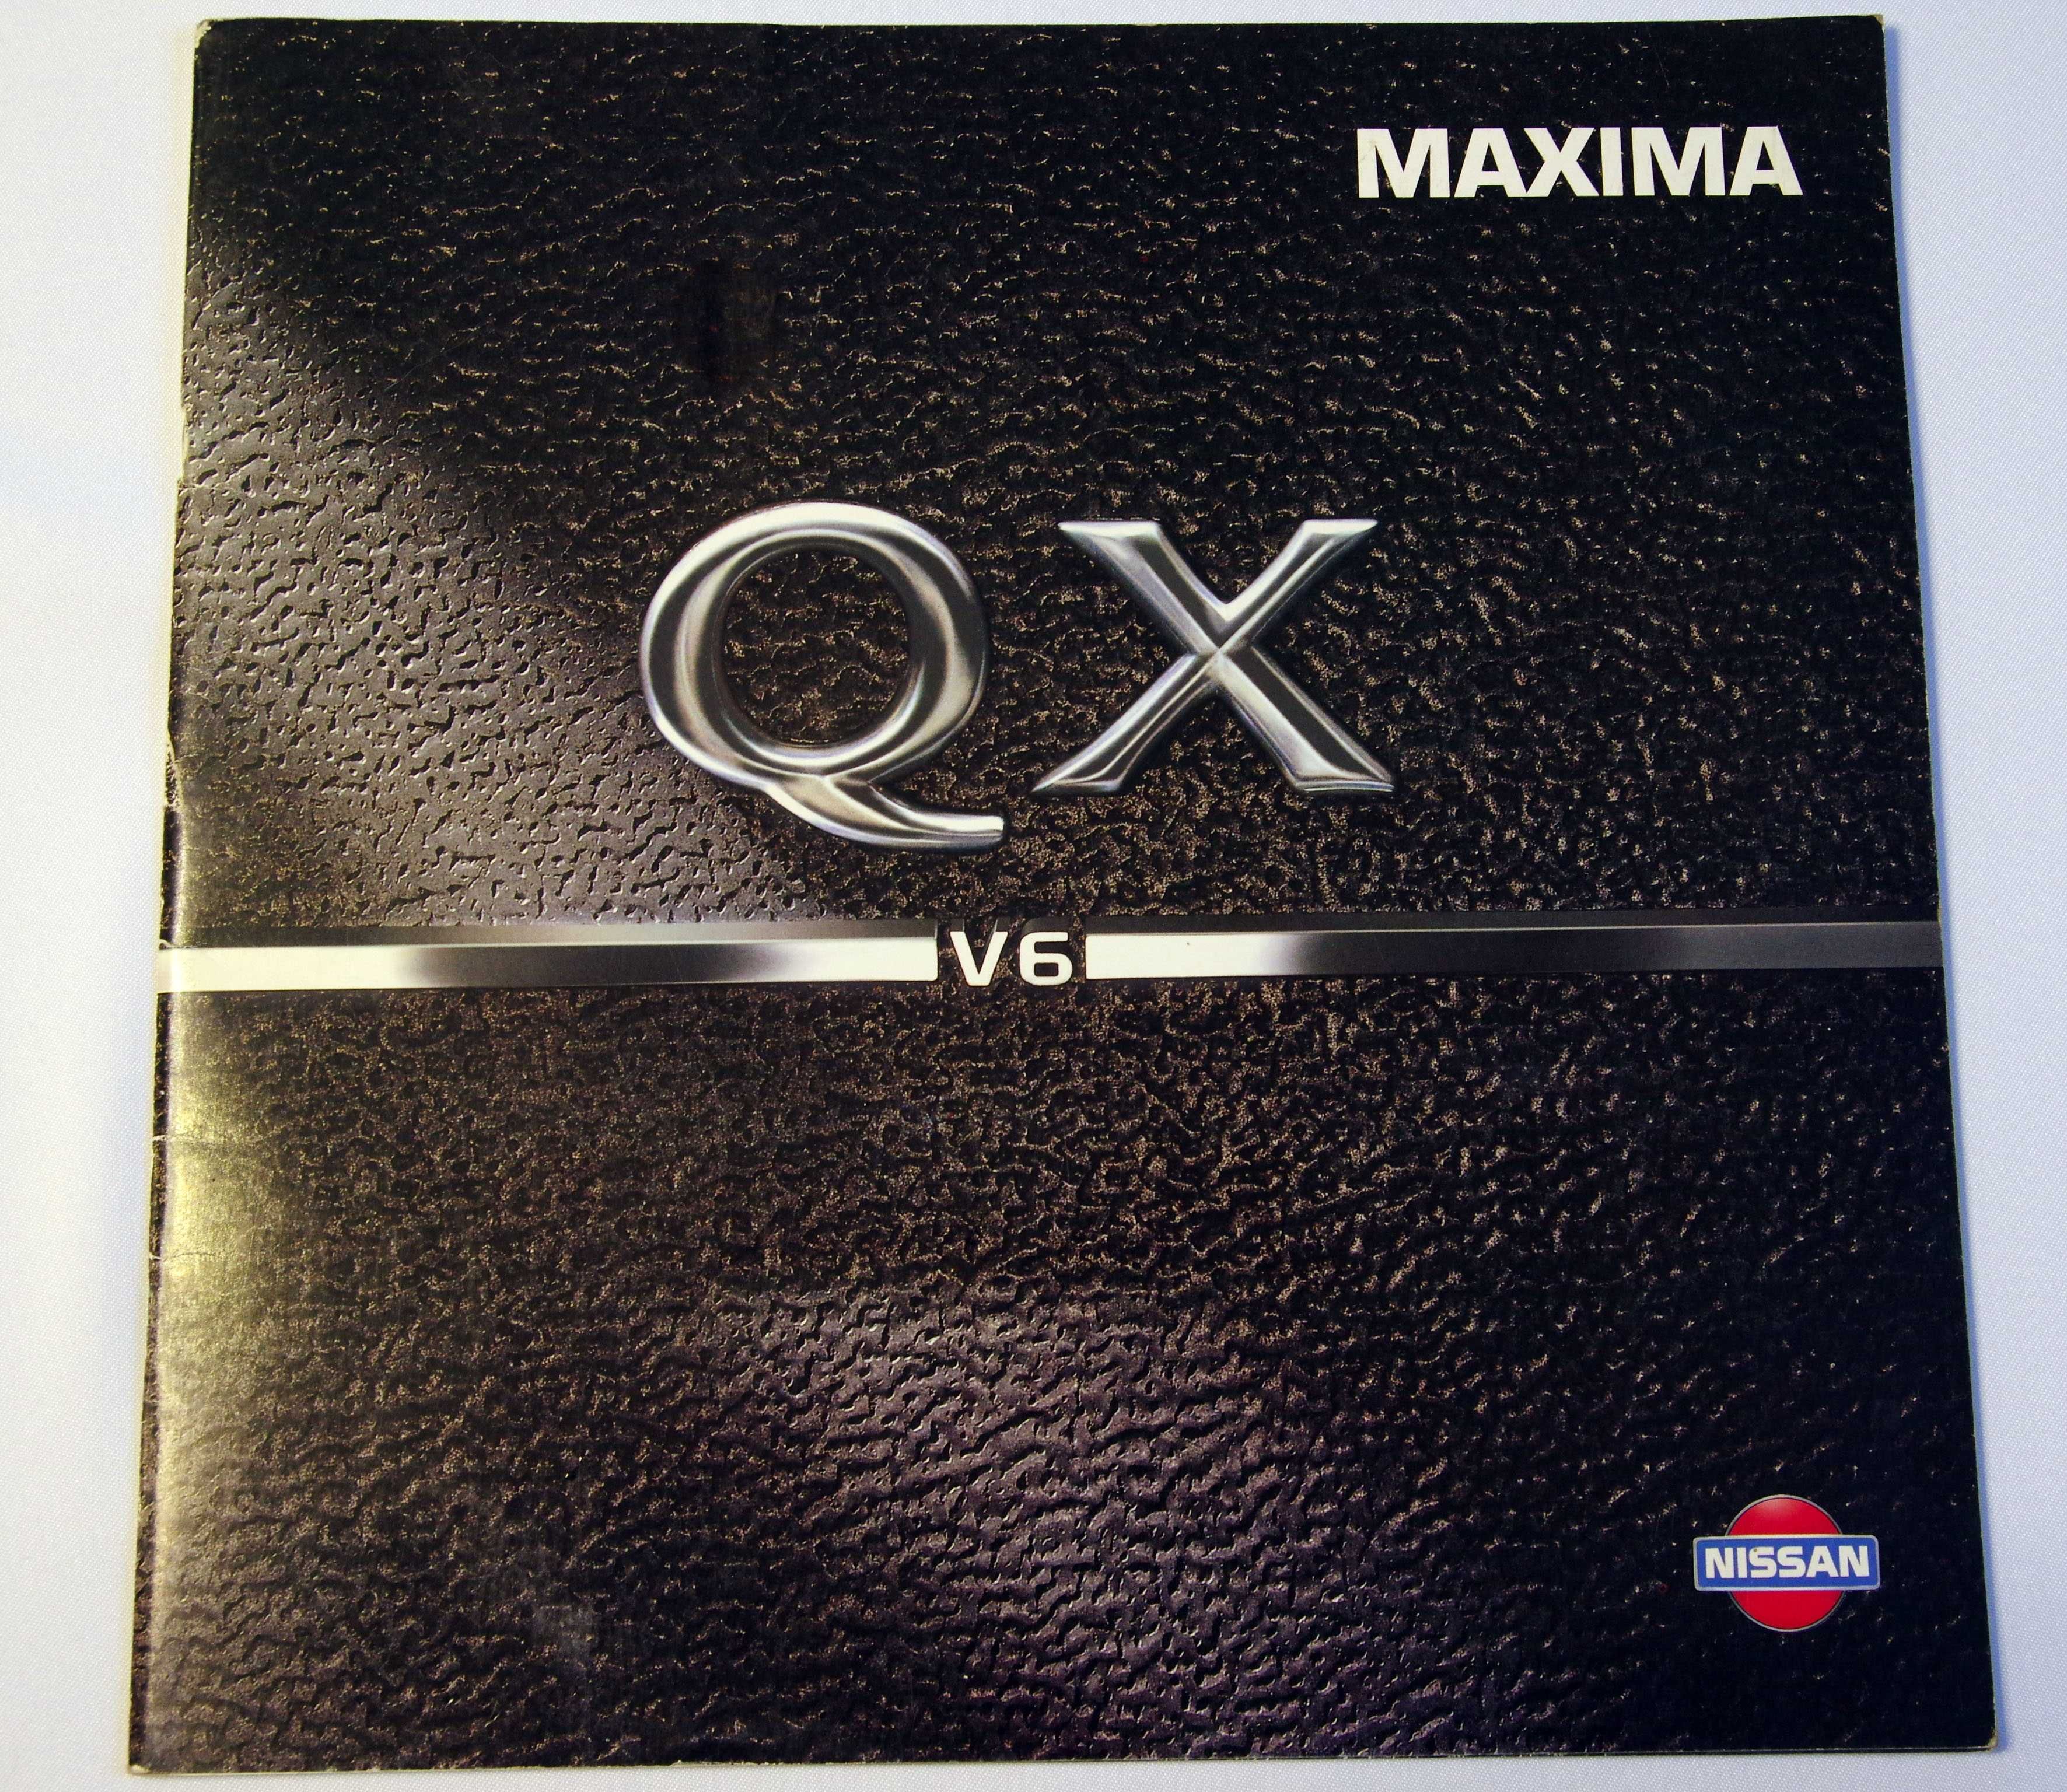 NISSAN Maxima QX V6 - katalog, prospekt